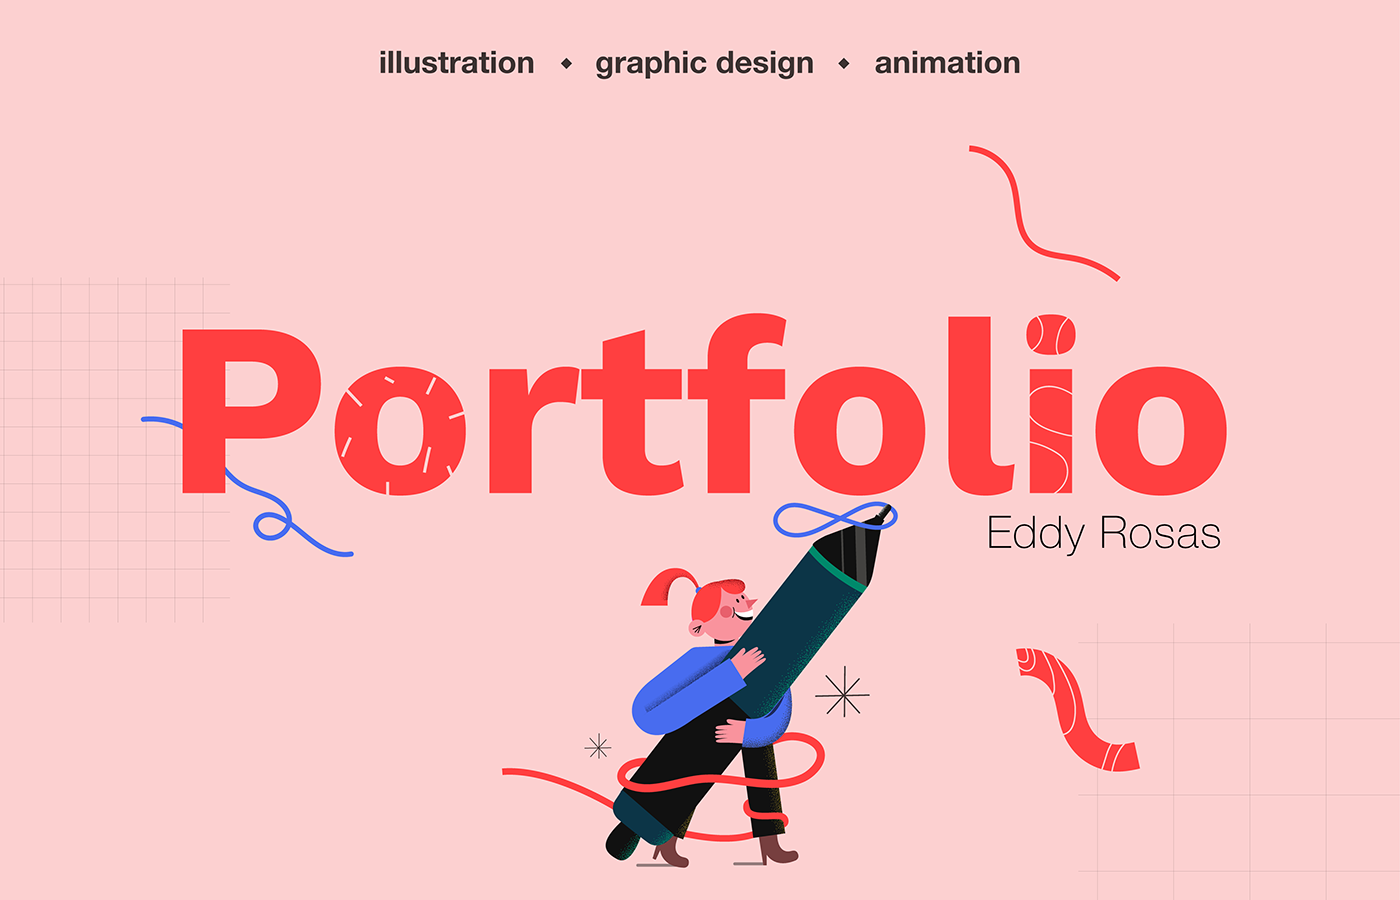 Curriculum Vitae CV cv design diseño gráfico hoja de vida ilustracion portafolio portfolio Resume